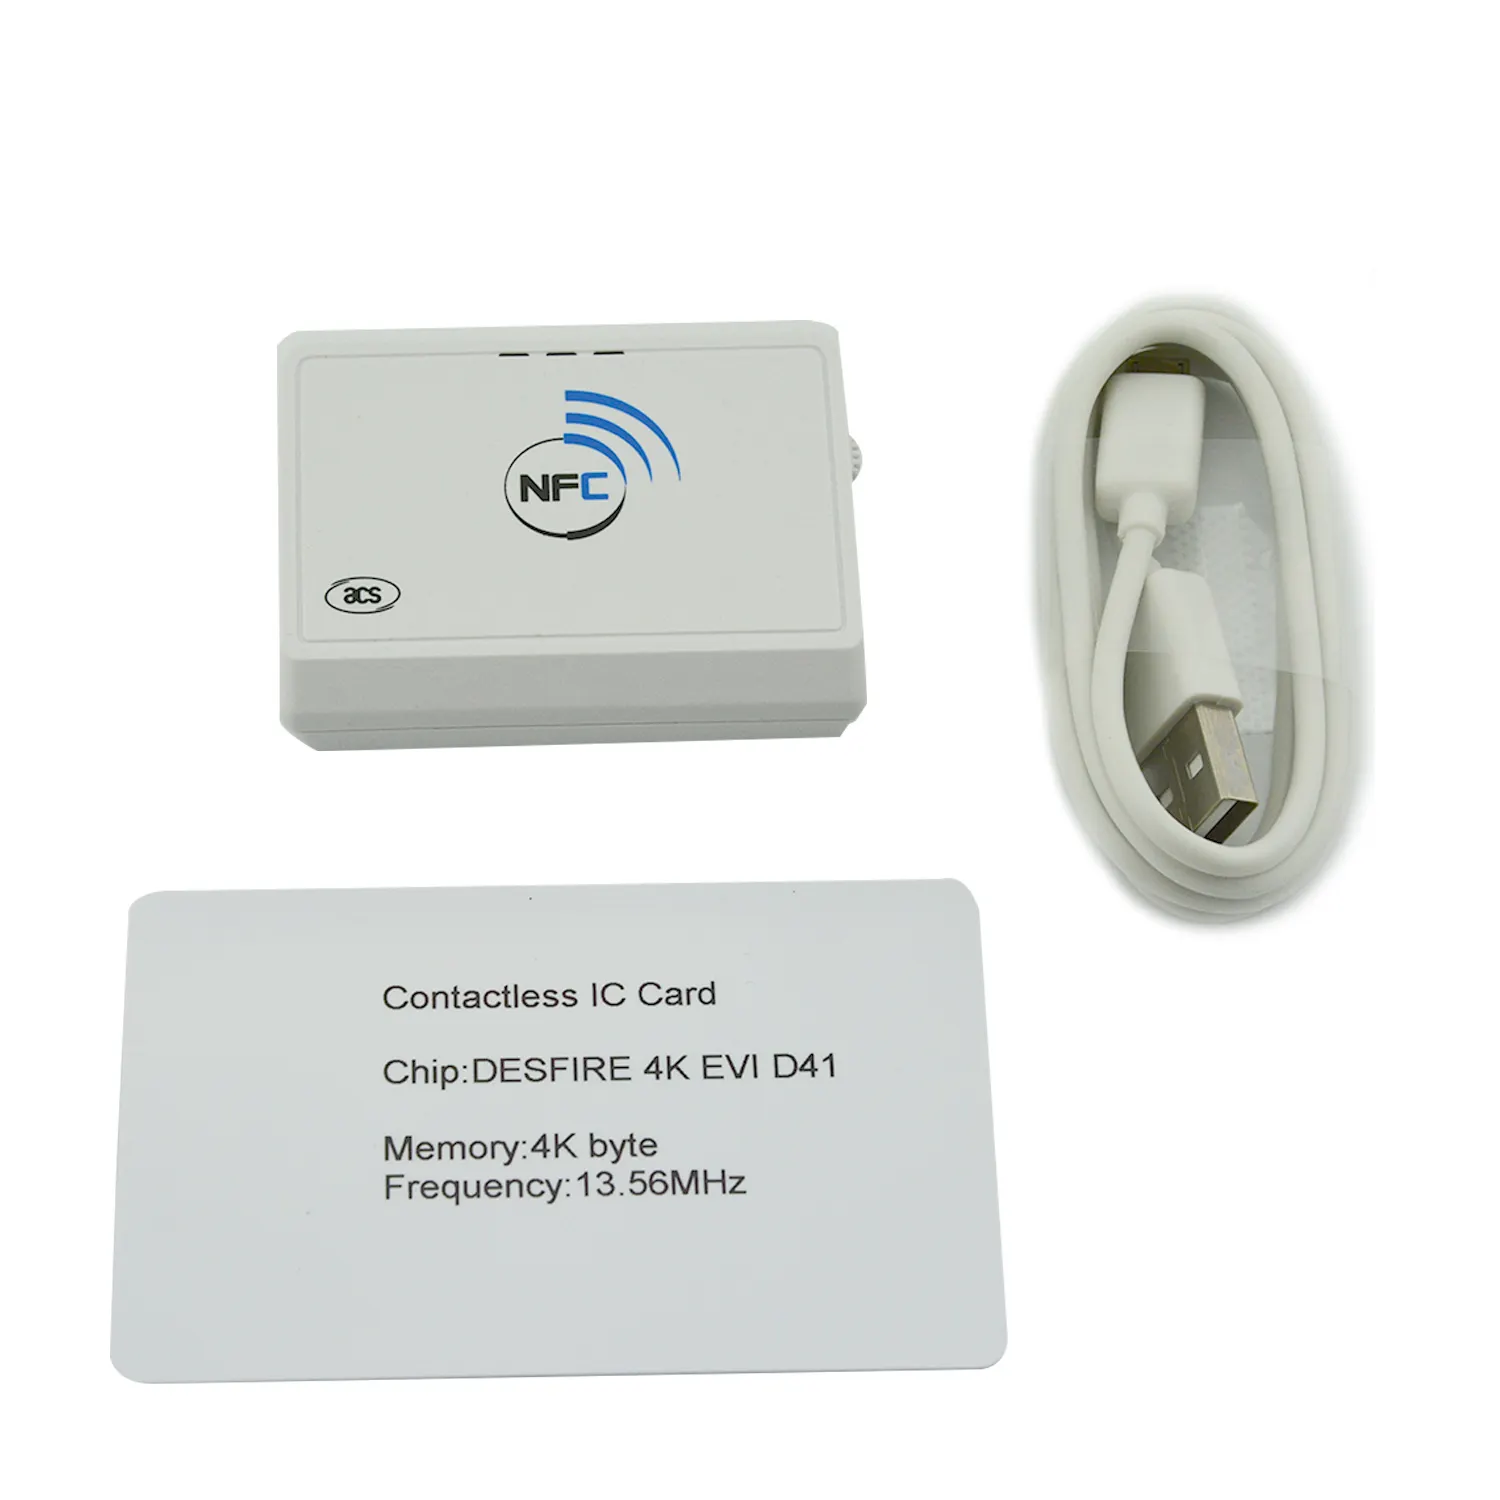 हैंडहेल्ड पोर्टेबल पॉकेटमेट सीसीआईडी यूएसबी एसीएस संपर्क रहित बीटी एनएफसी स्मार्ट कार्ड रीडर ACR1311U-N2